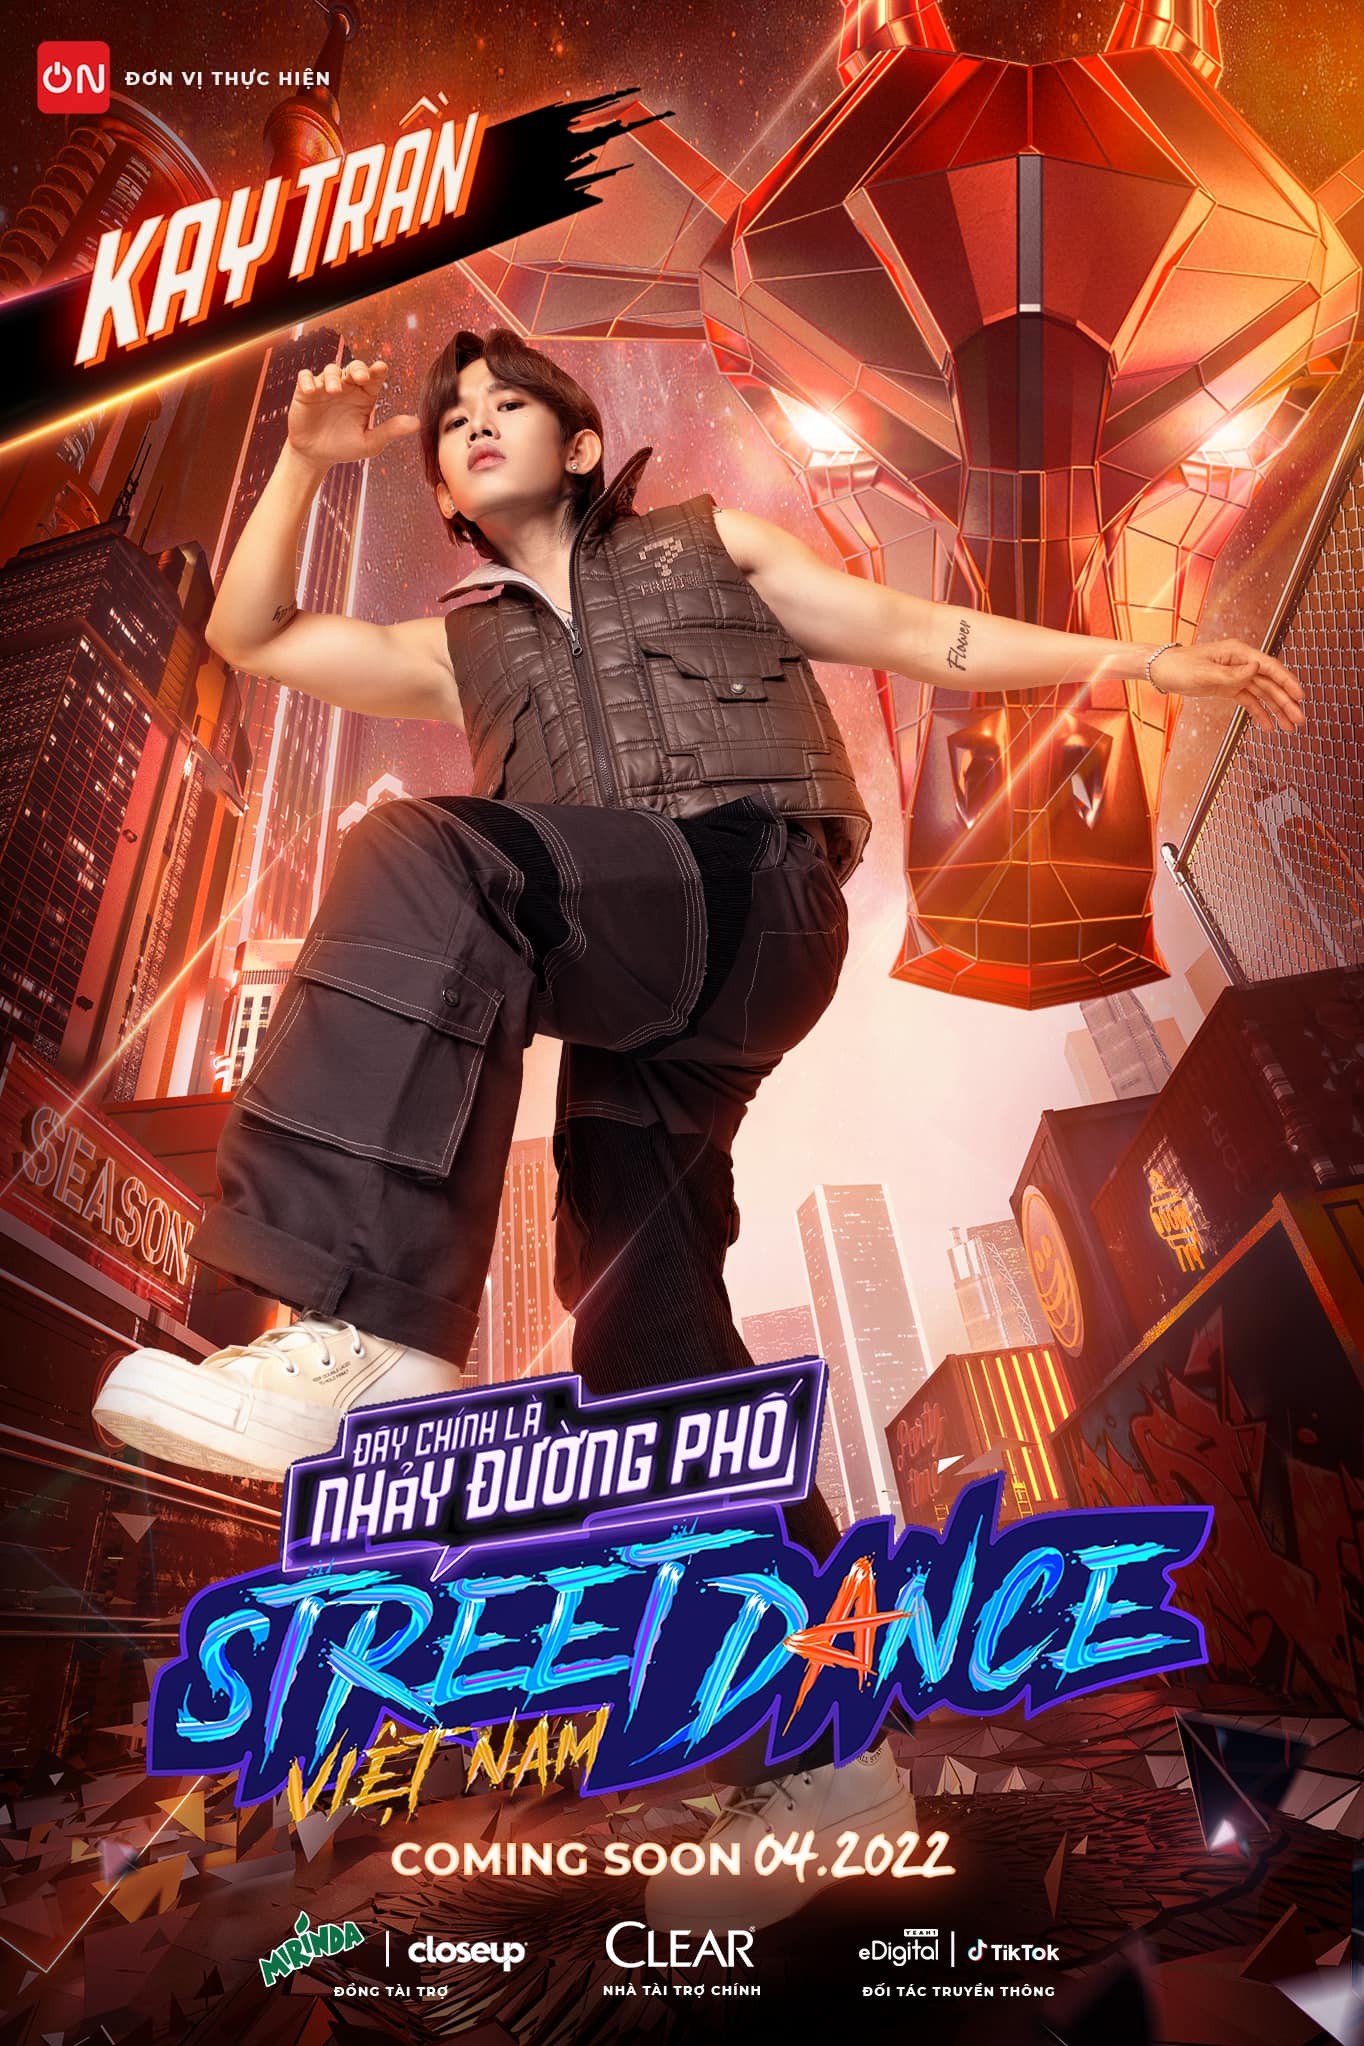 Hiện tại, Kay Trần đang tham gia show giải trí về nhảy Street Dance Việt Nam.